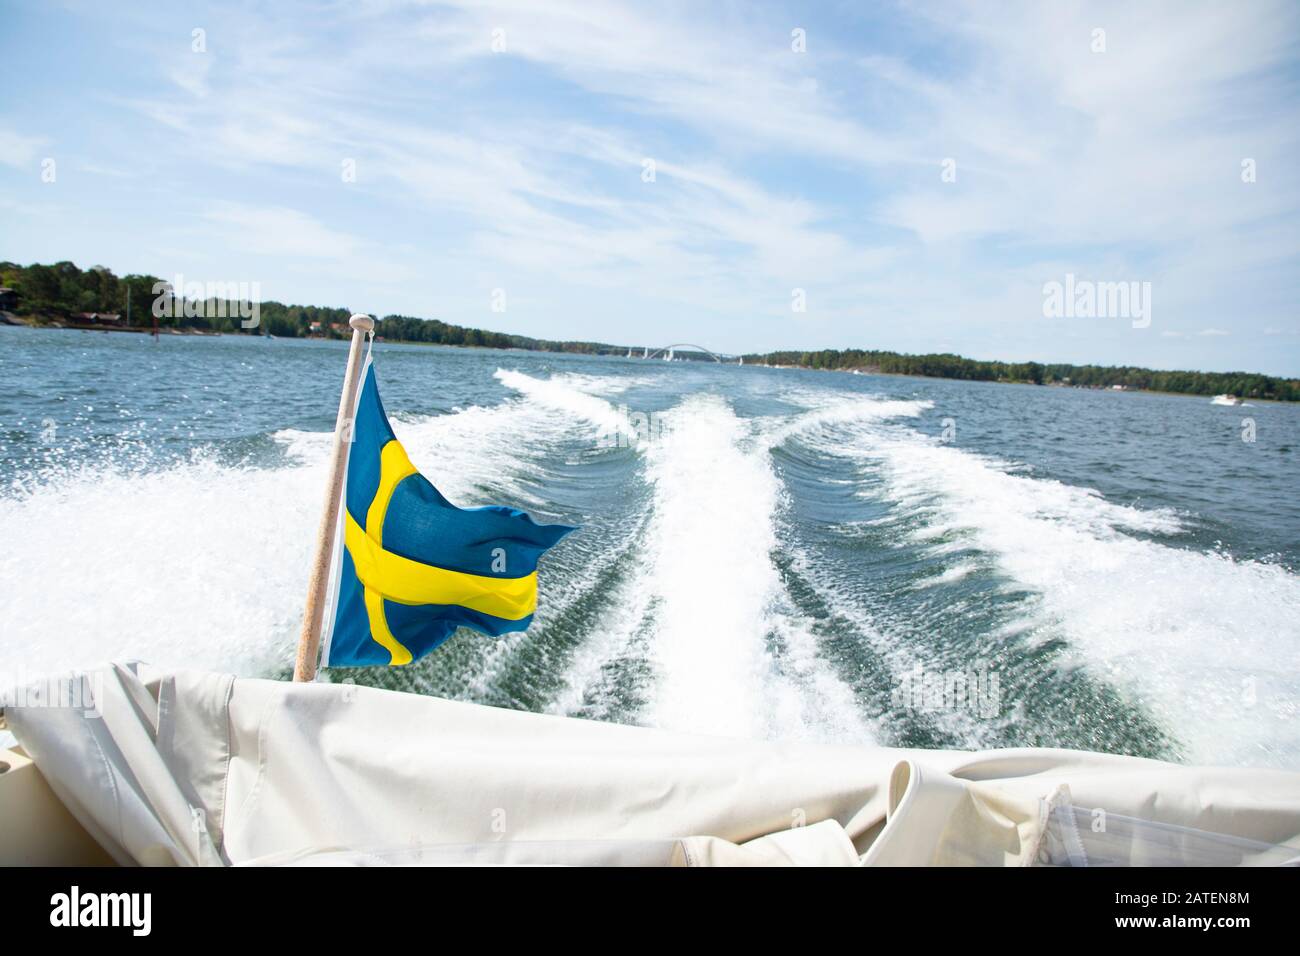 Vue de l'arrière d'un bateau à mouvement rapide avec le drapeau suédois Banque D'Images